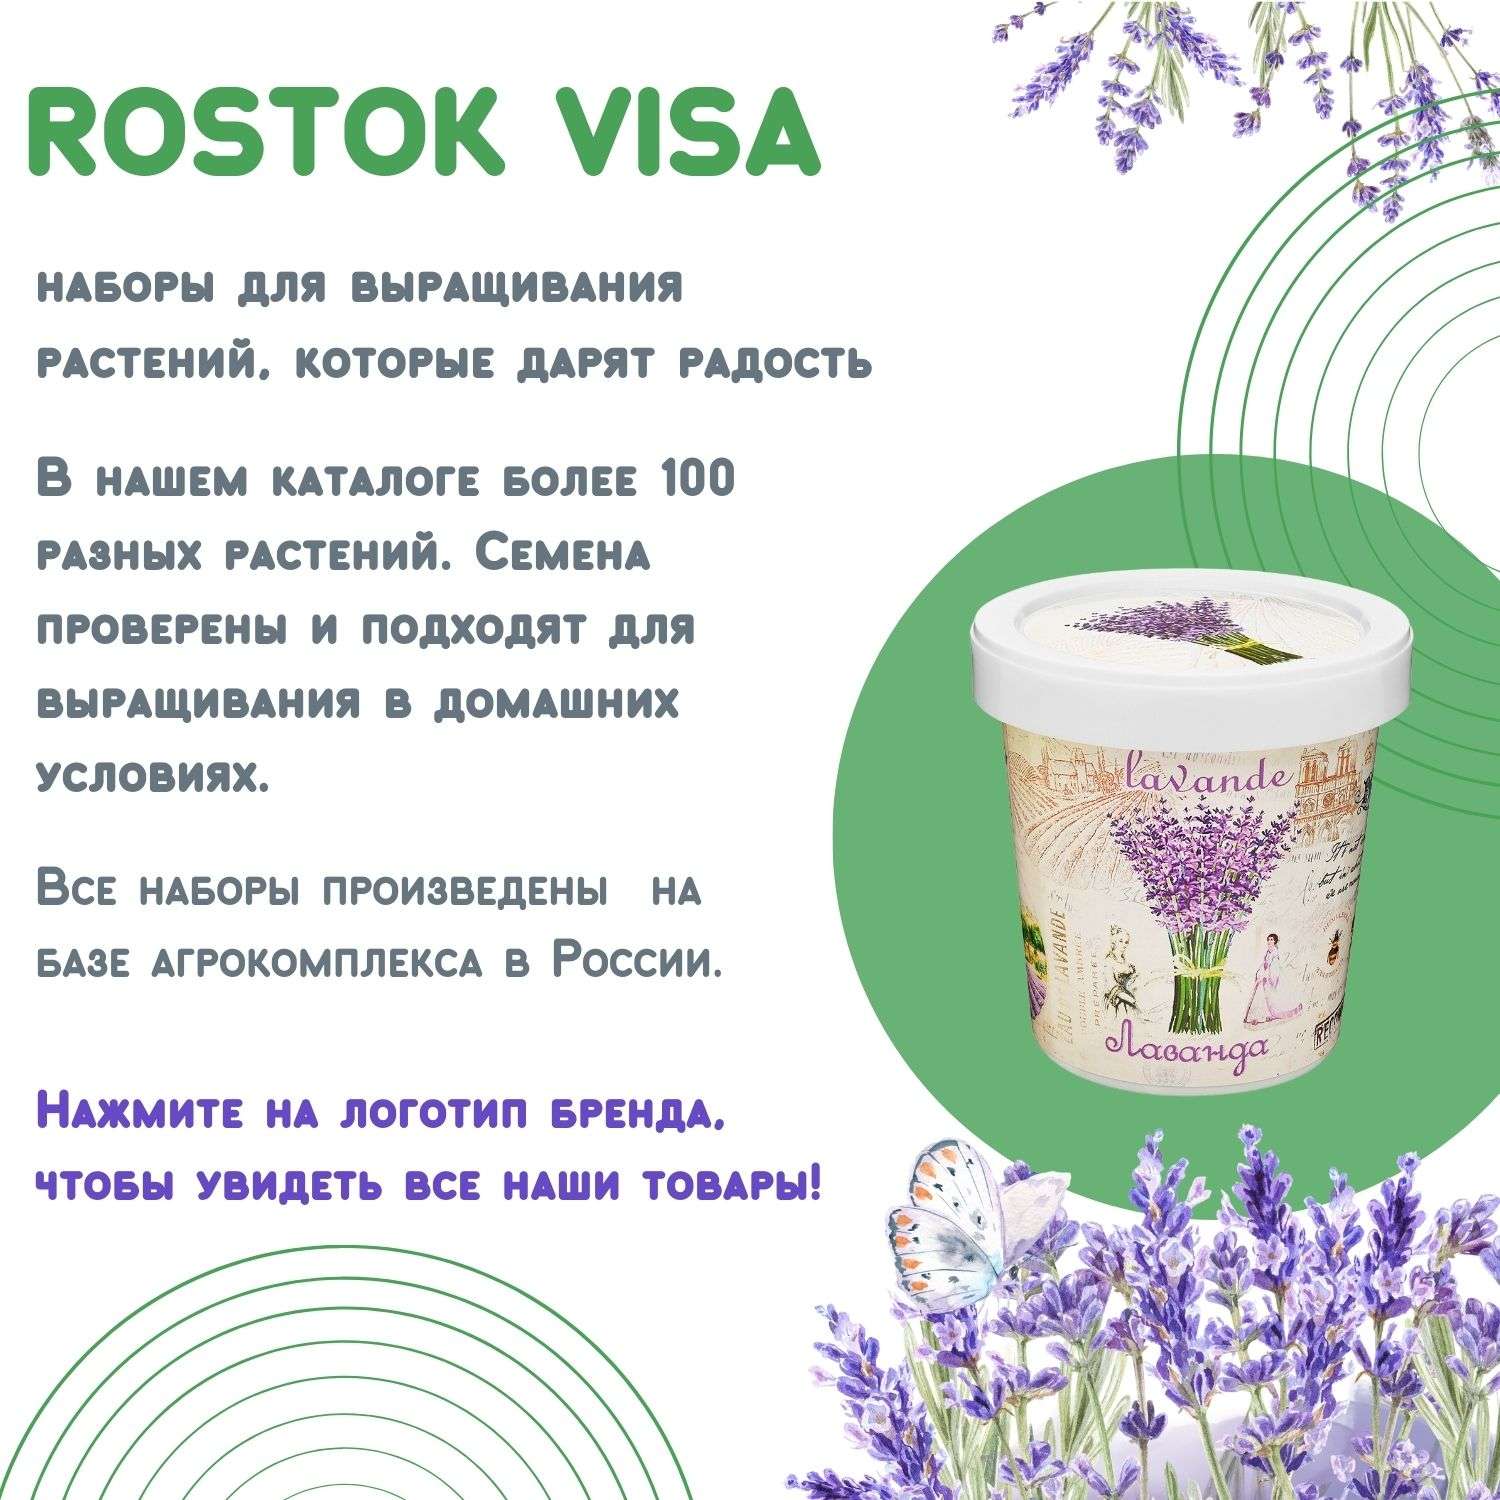 Набор для выращивания растений Rostok Visa Вырасти сам цветок Гайлардия в подарочном горшке - фото 7